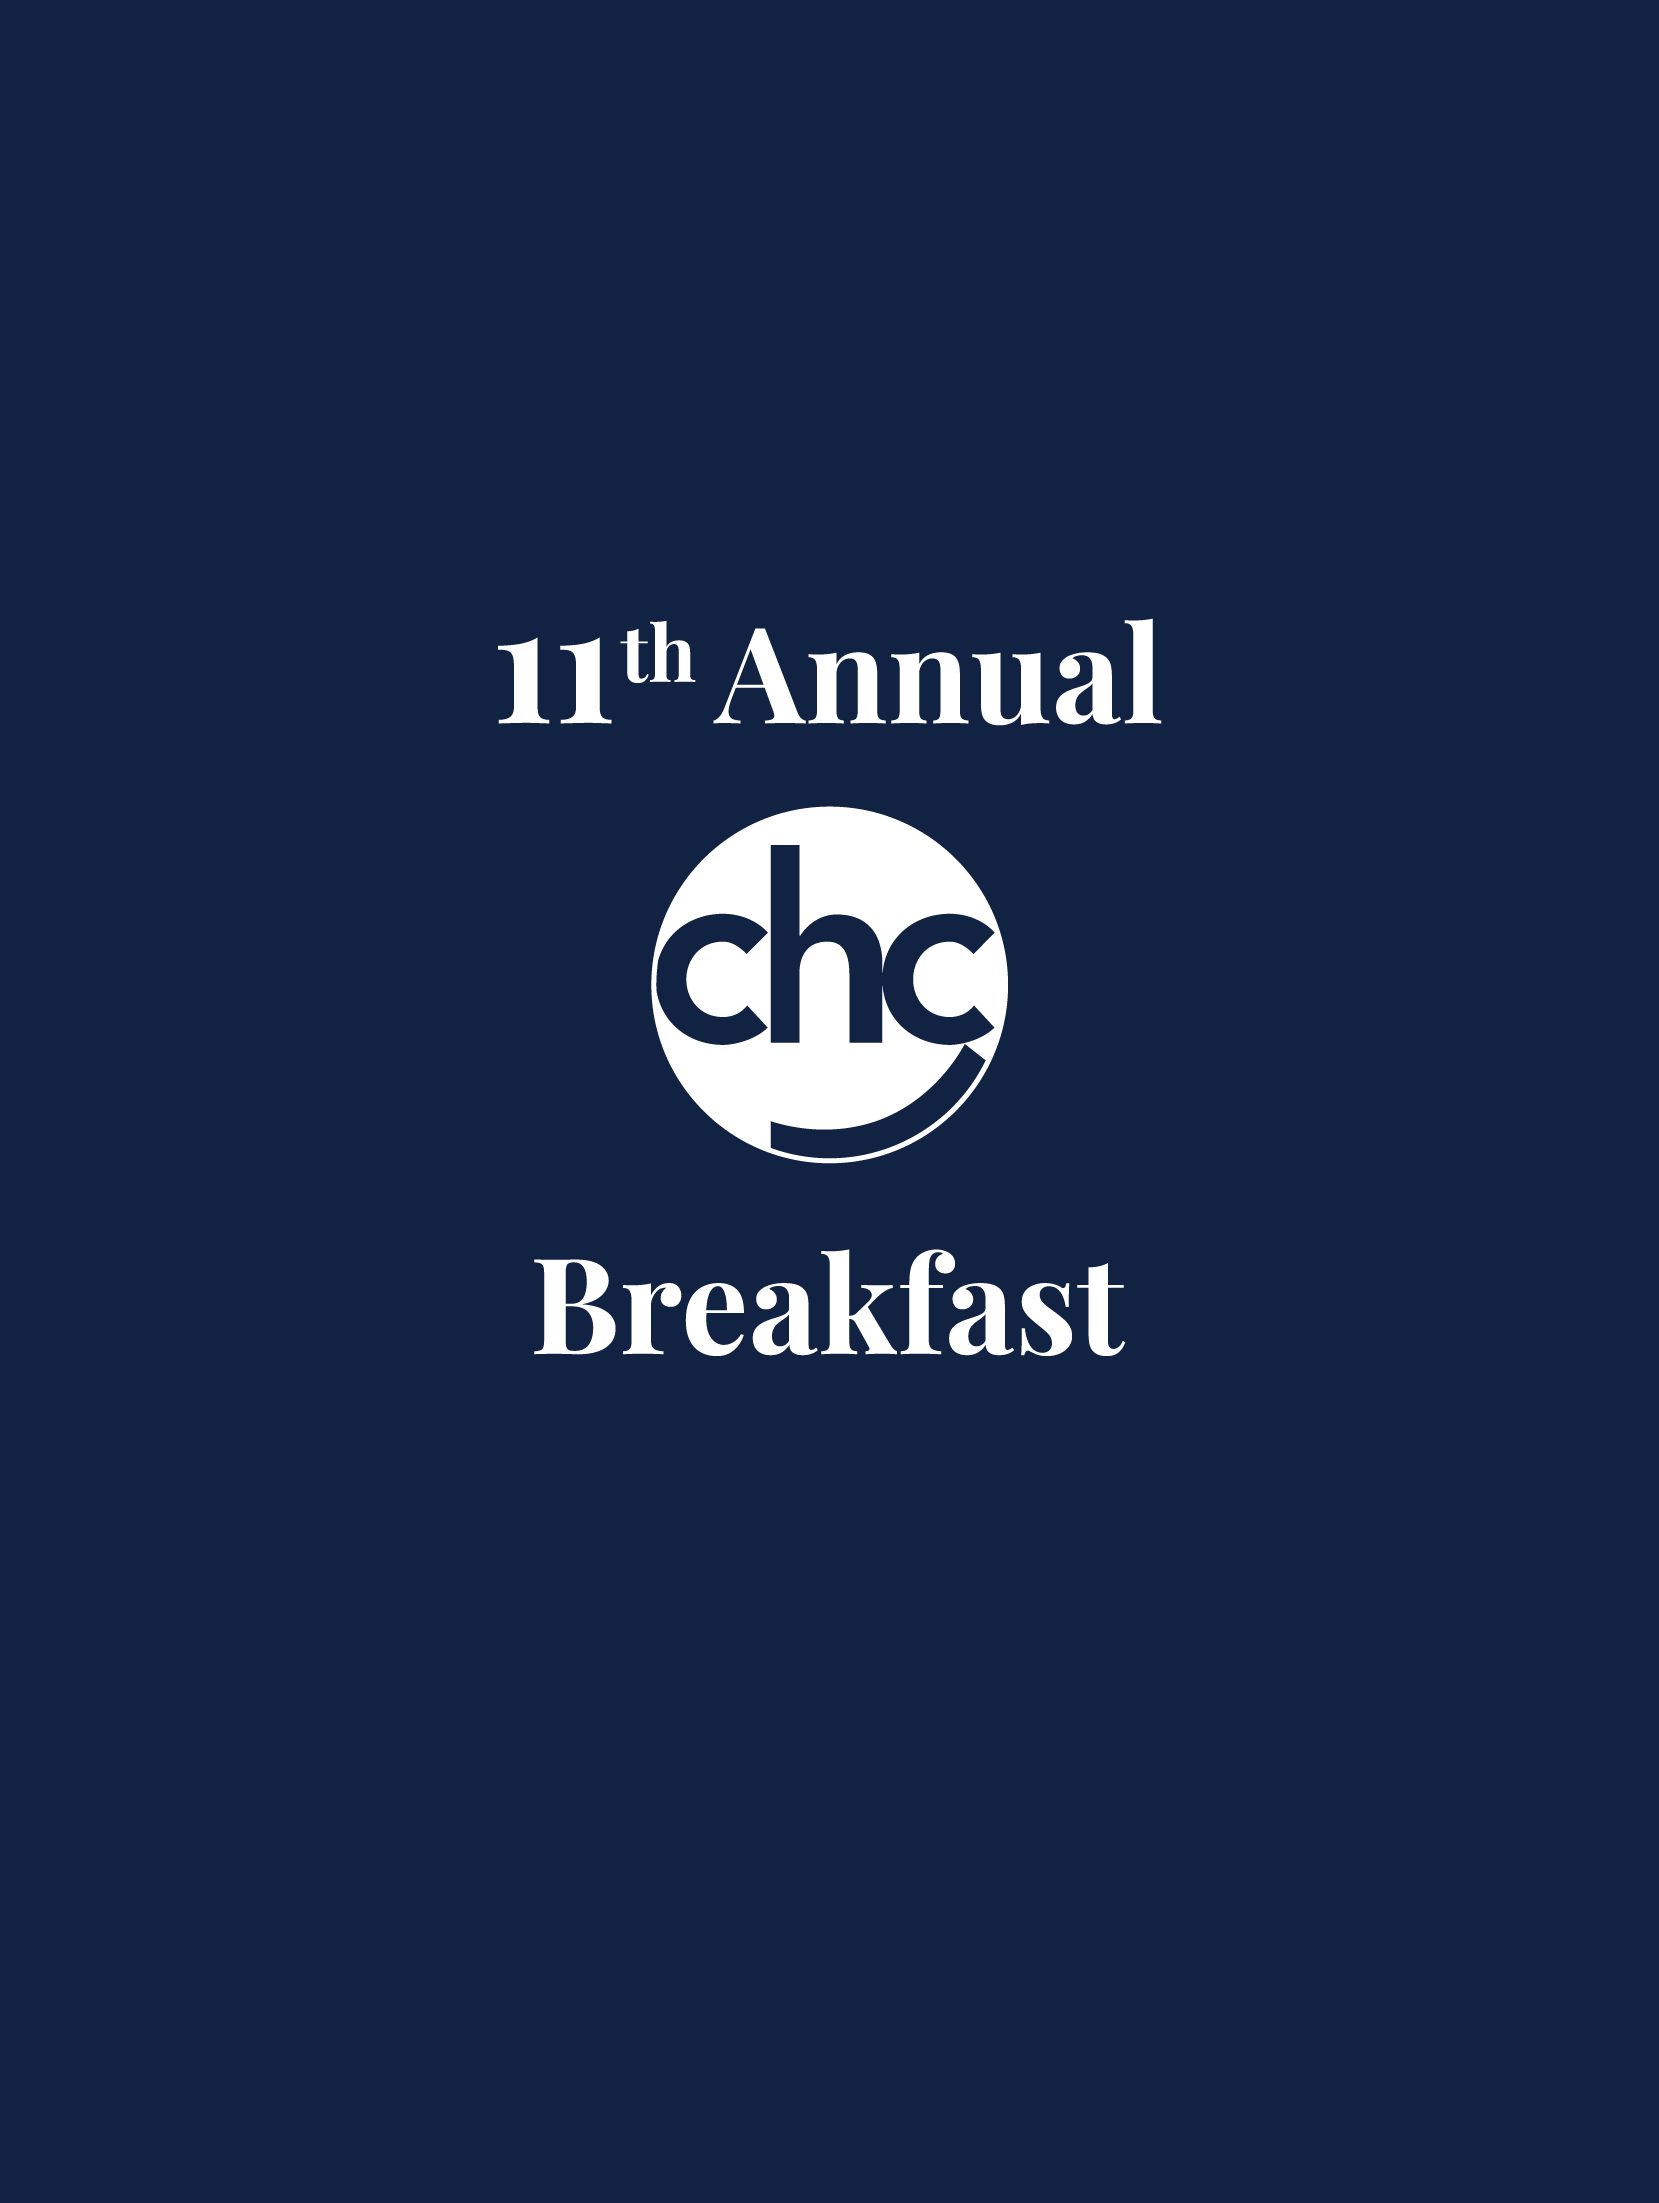 11th Annual CHC Breakfast